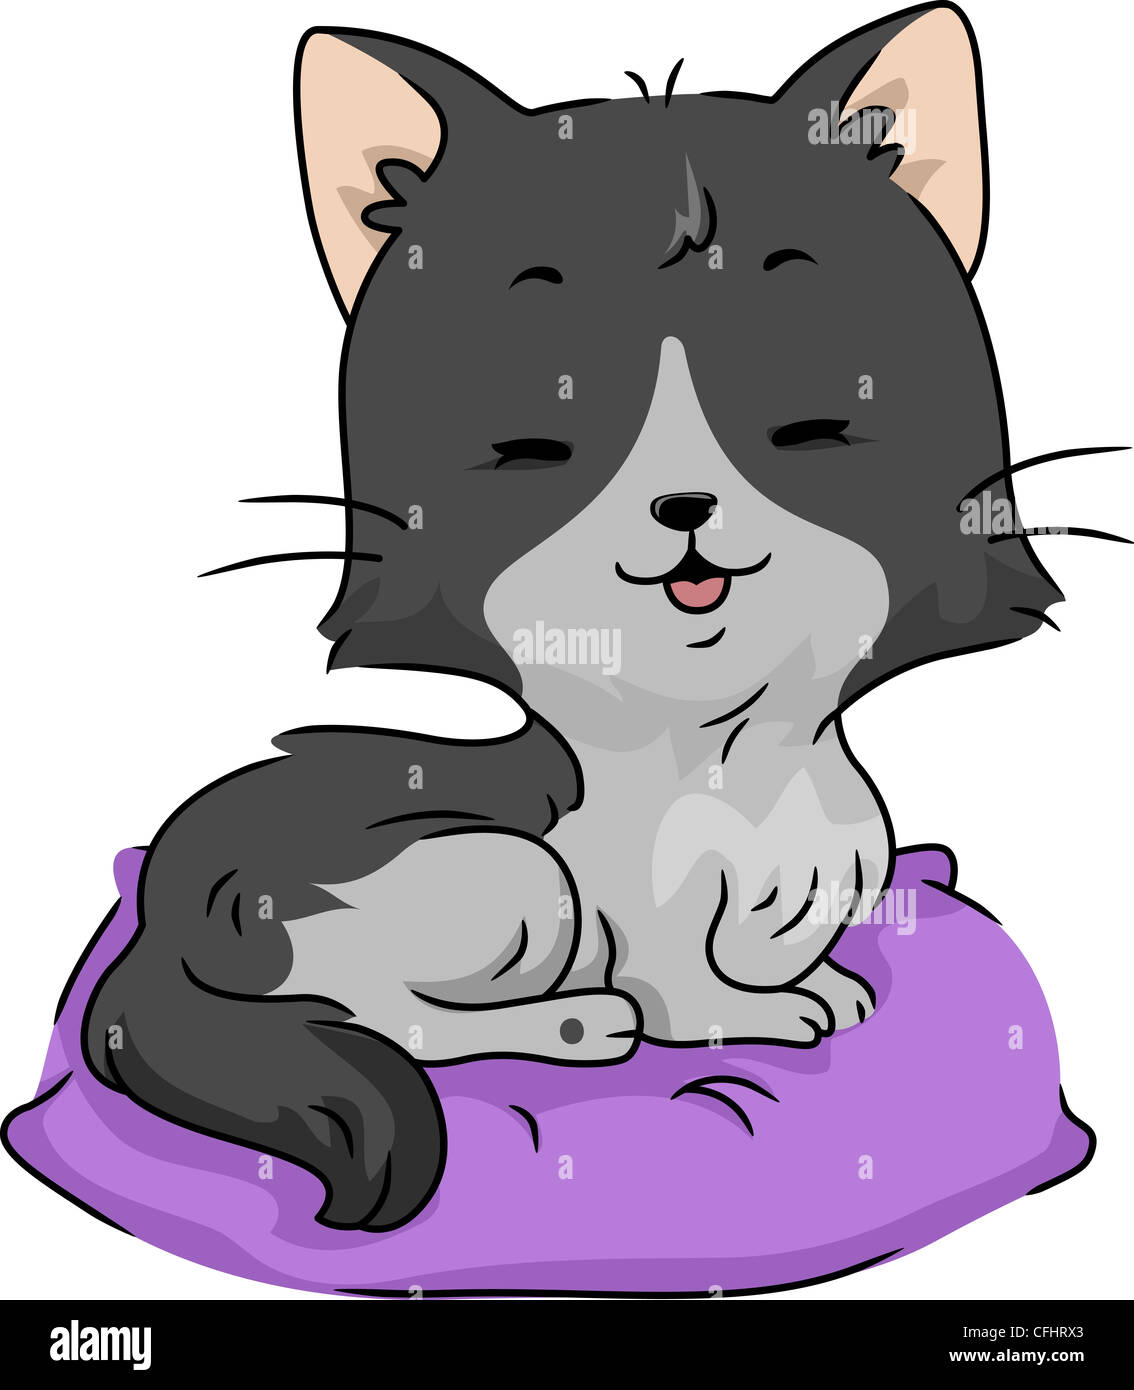 Abbildung einer Katze auf einem Kissen liegend Stockfoto